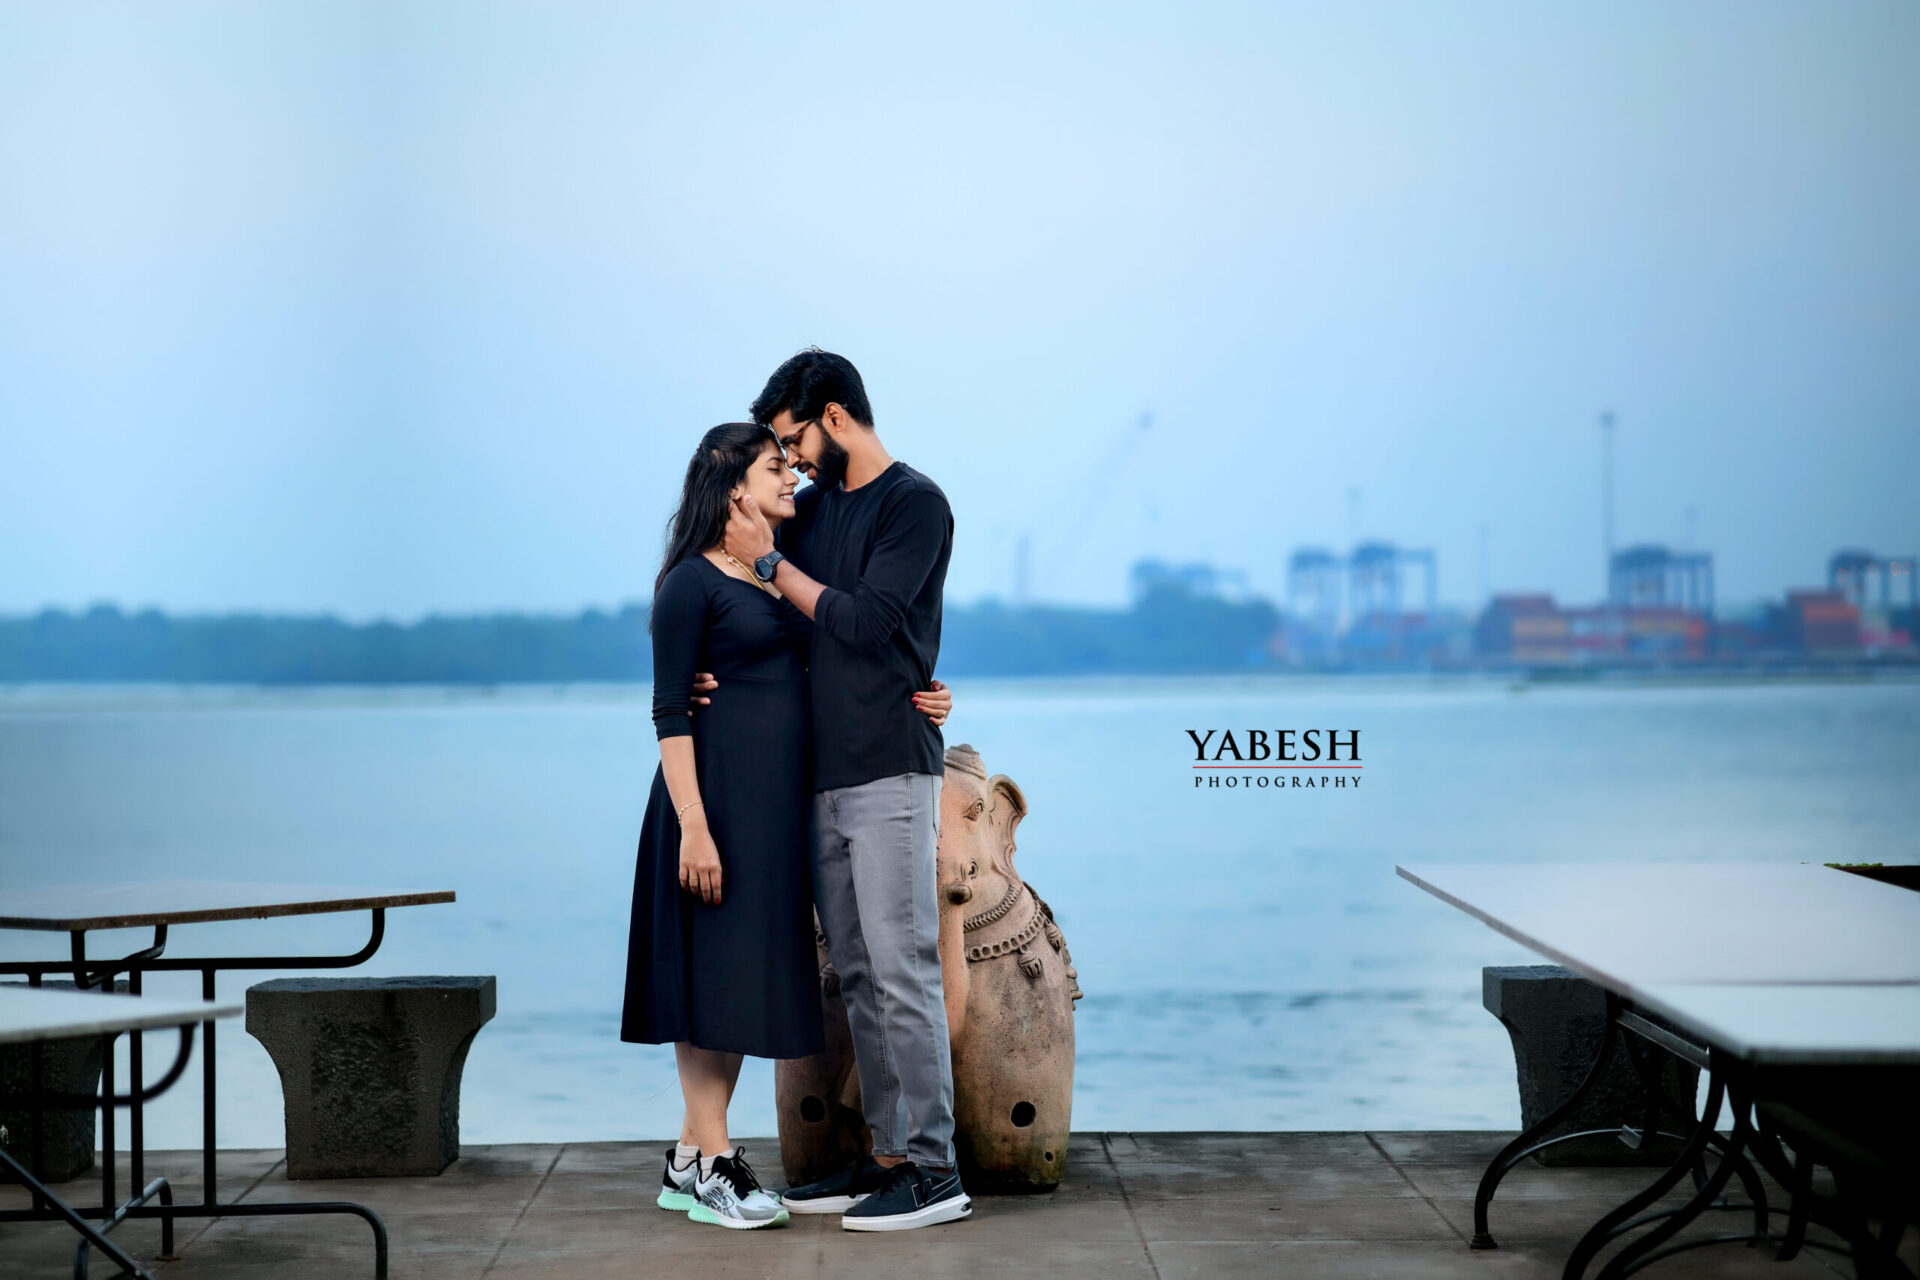 Yabesh Photography: Nitya & Kowsalya's Post-Wedding Photo Shoot